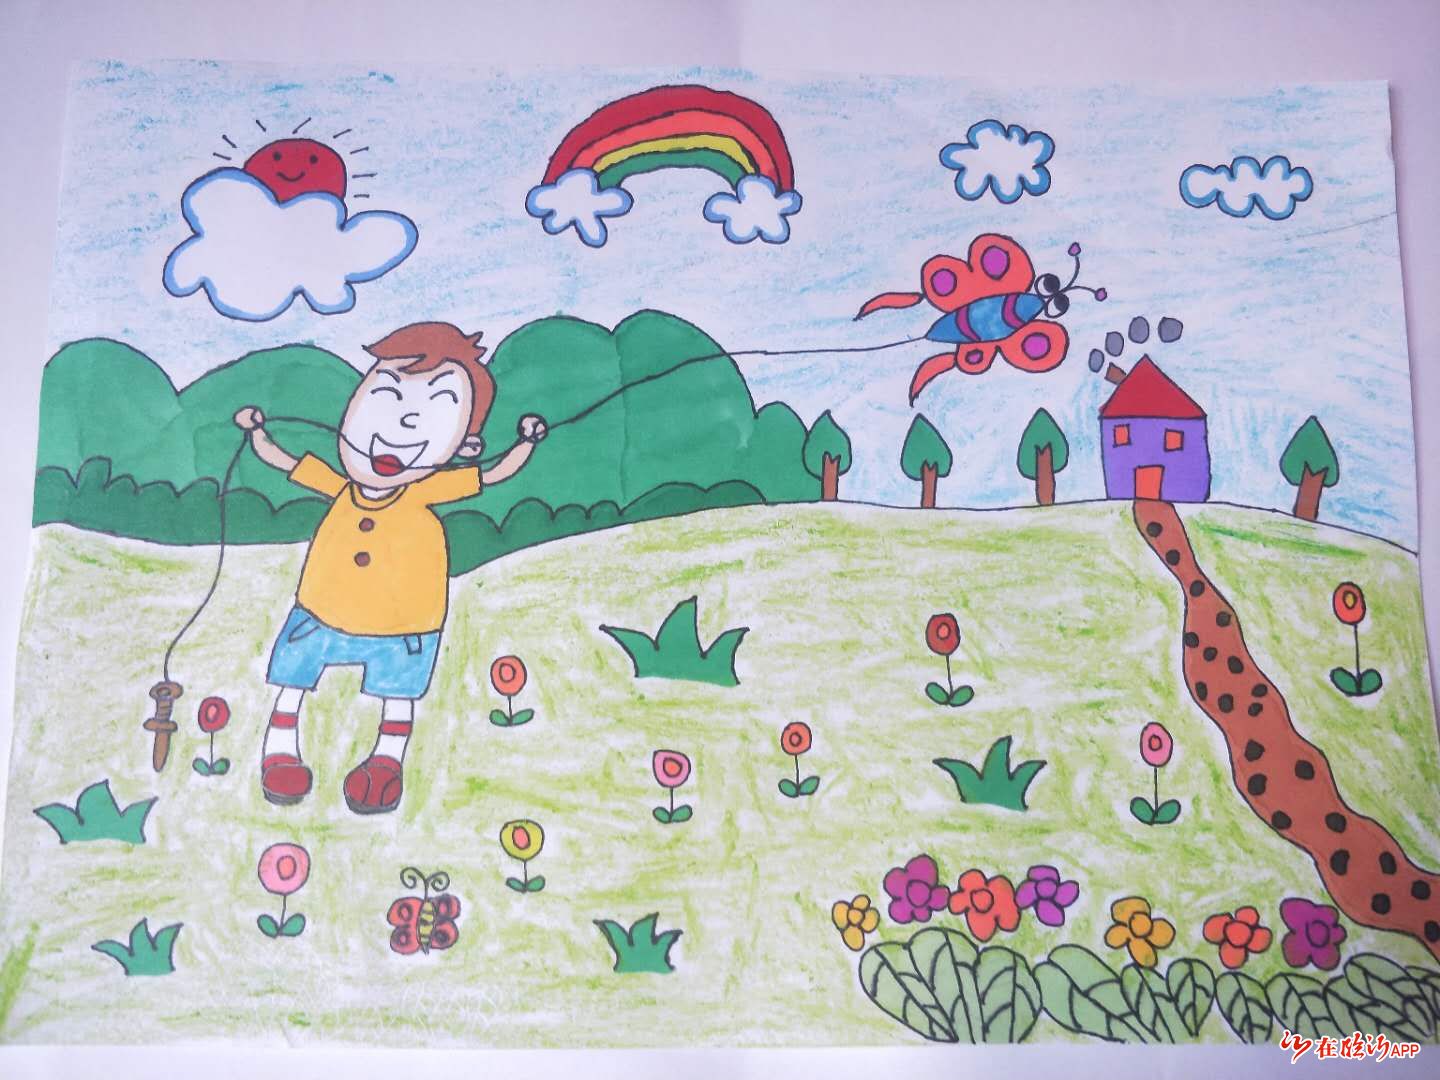 【佳作欣赏】"未来星杯"全国少年儿童公益征文绘画大赛作品展示(四)